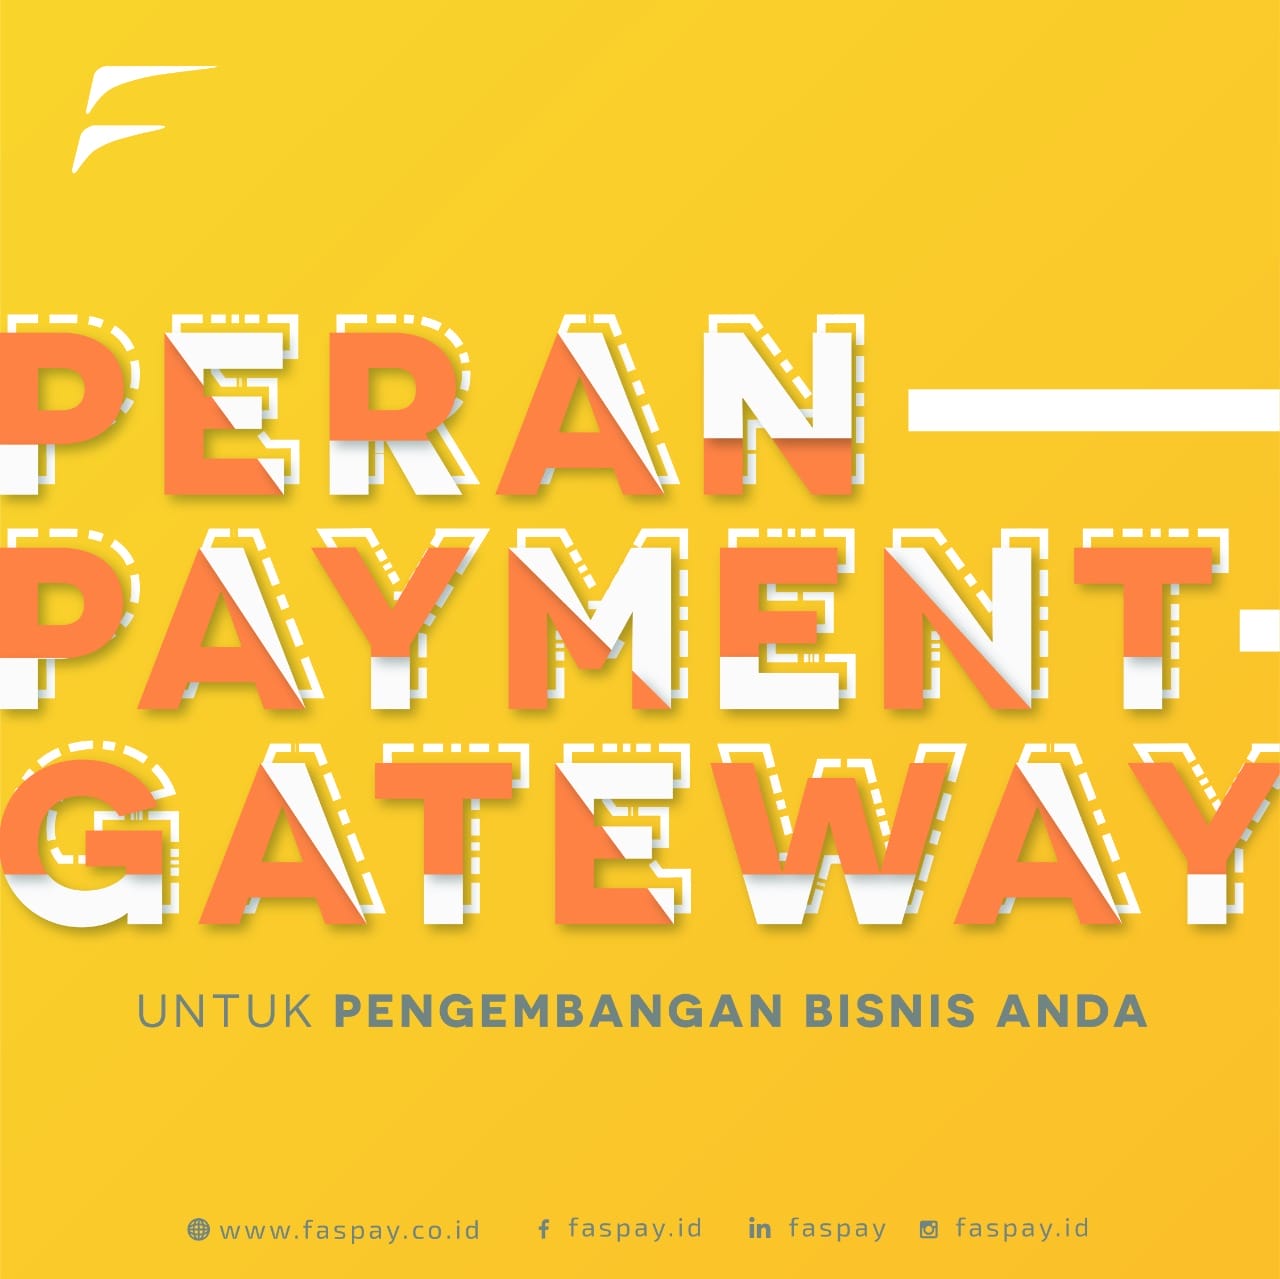 peran payment gateway